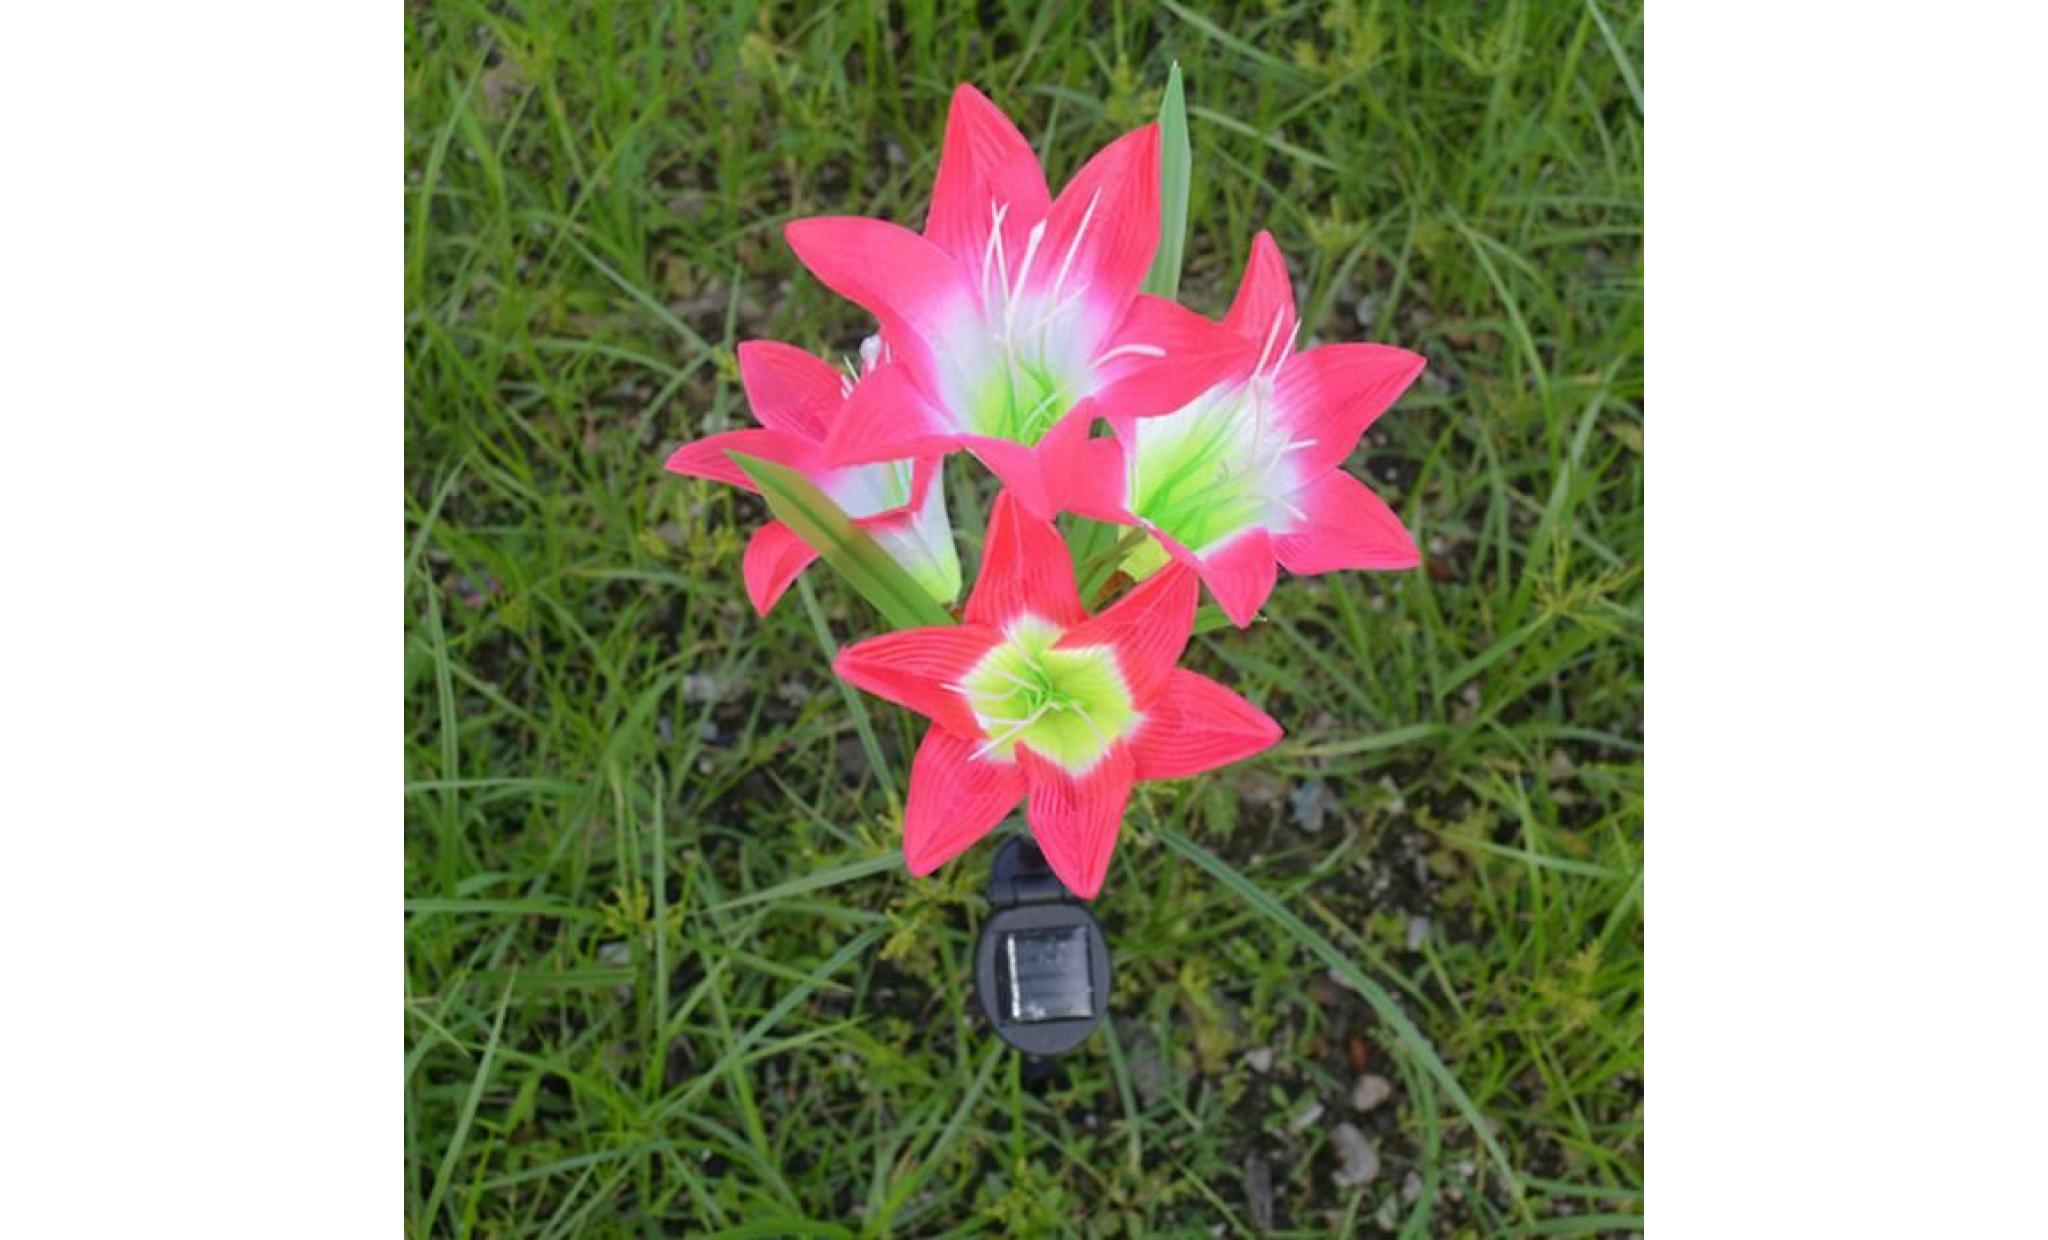 2 pièces lily flower garden powered solaire stake lumières fleurs artificielles led li596@ pas cher